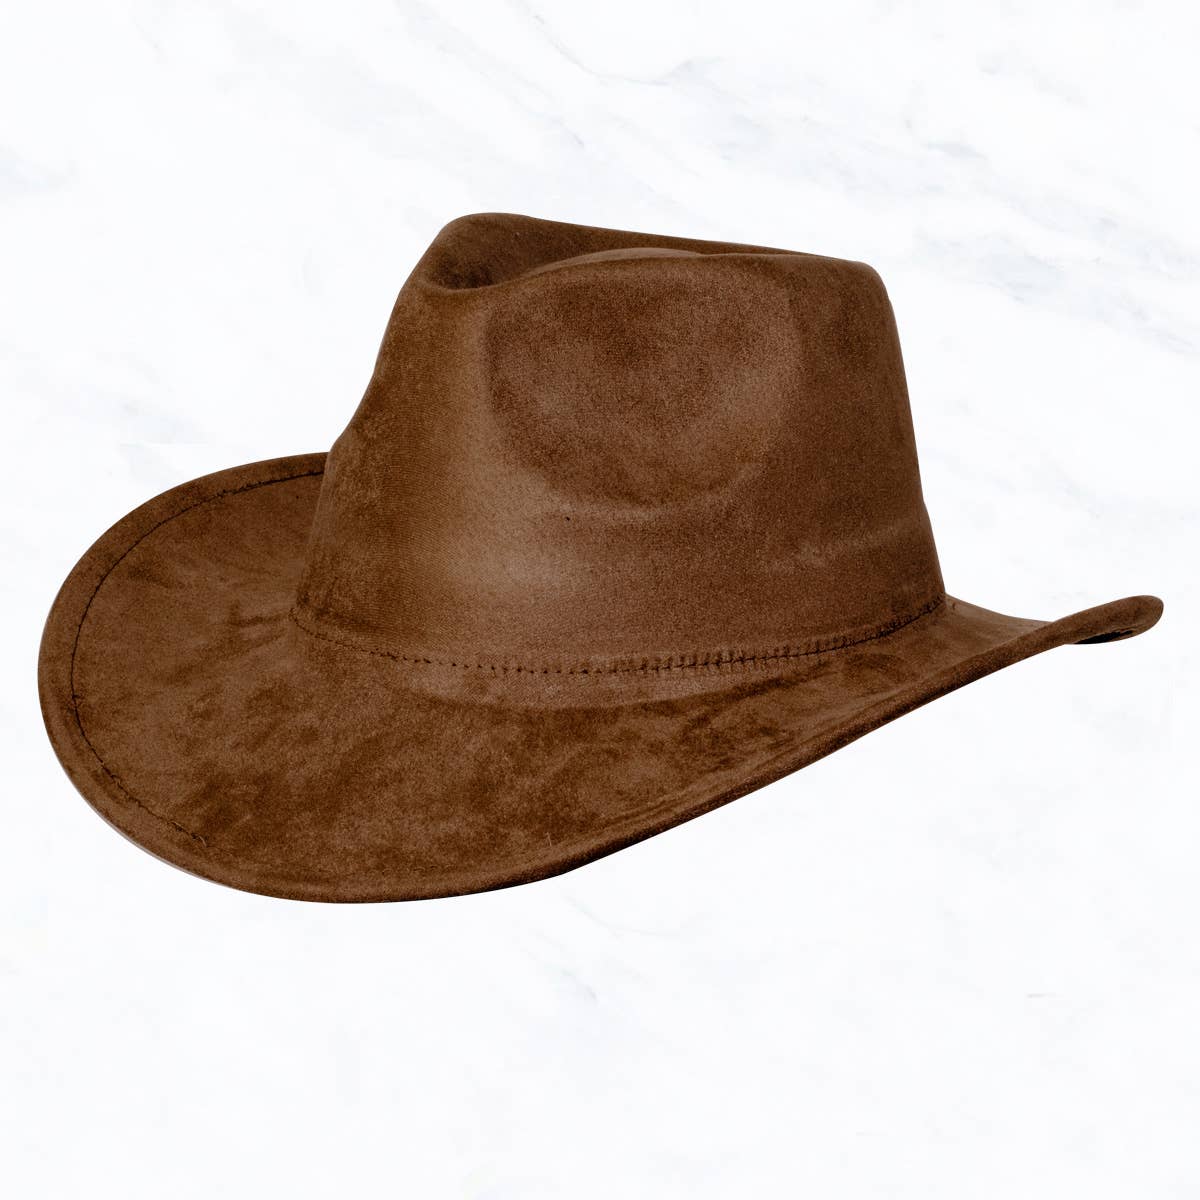 Suzie Q USA - Suede Regular Cowboy Fedora Hat